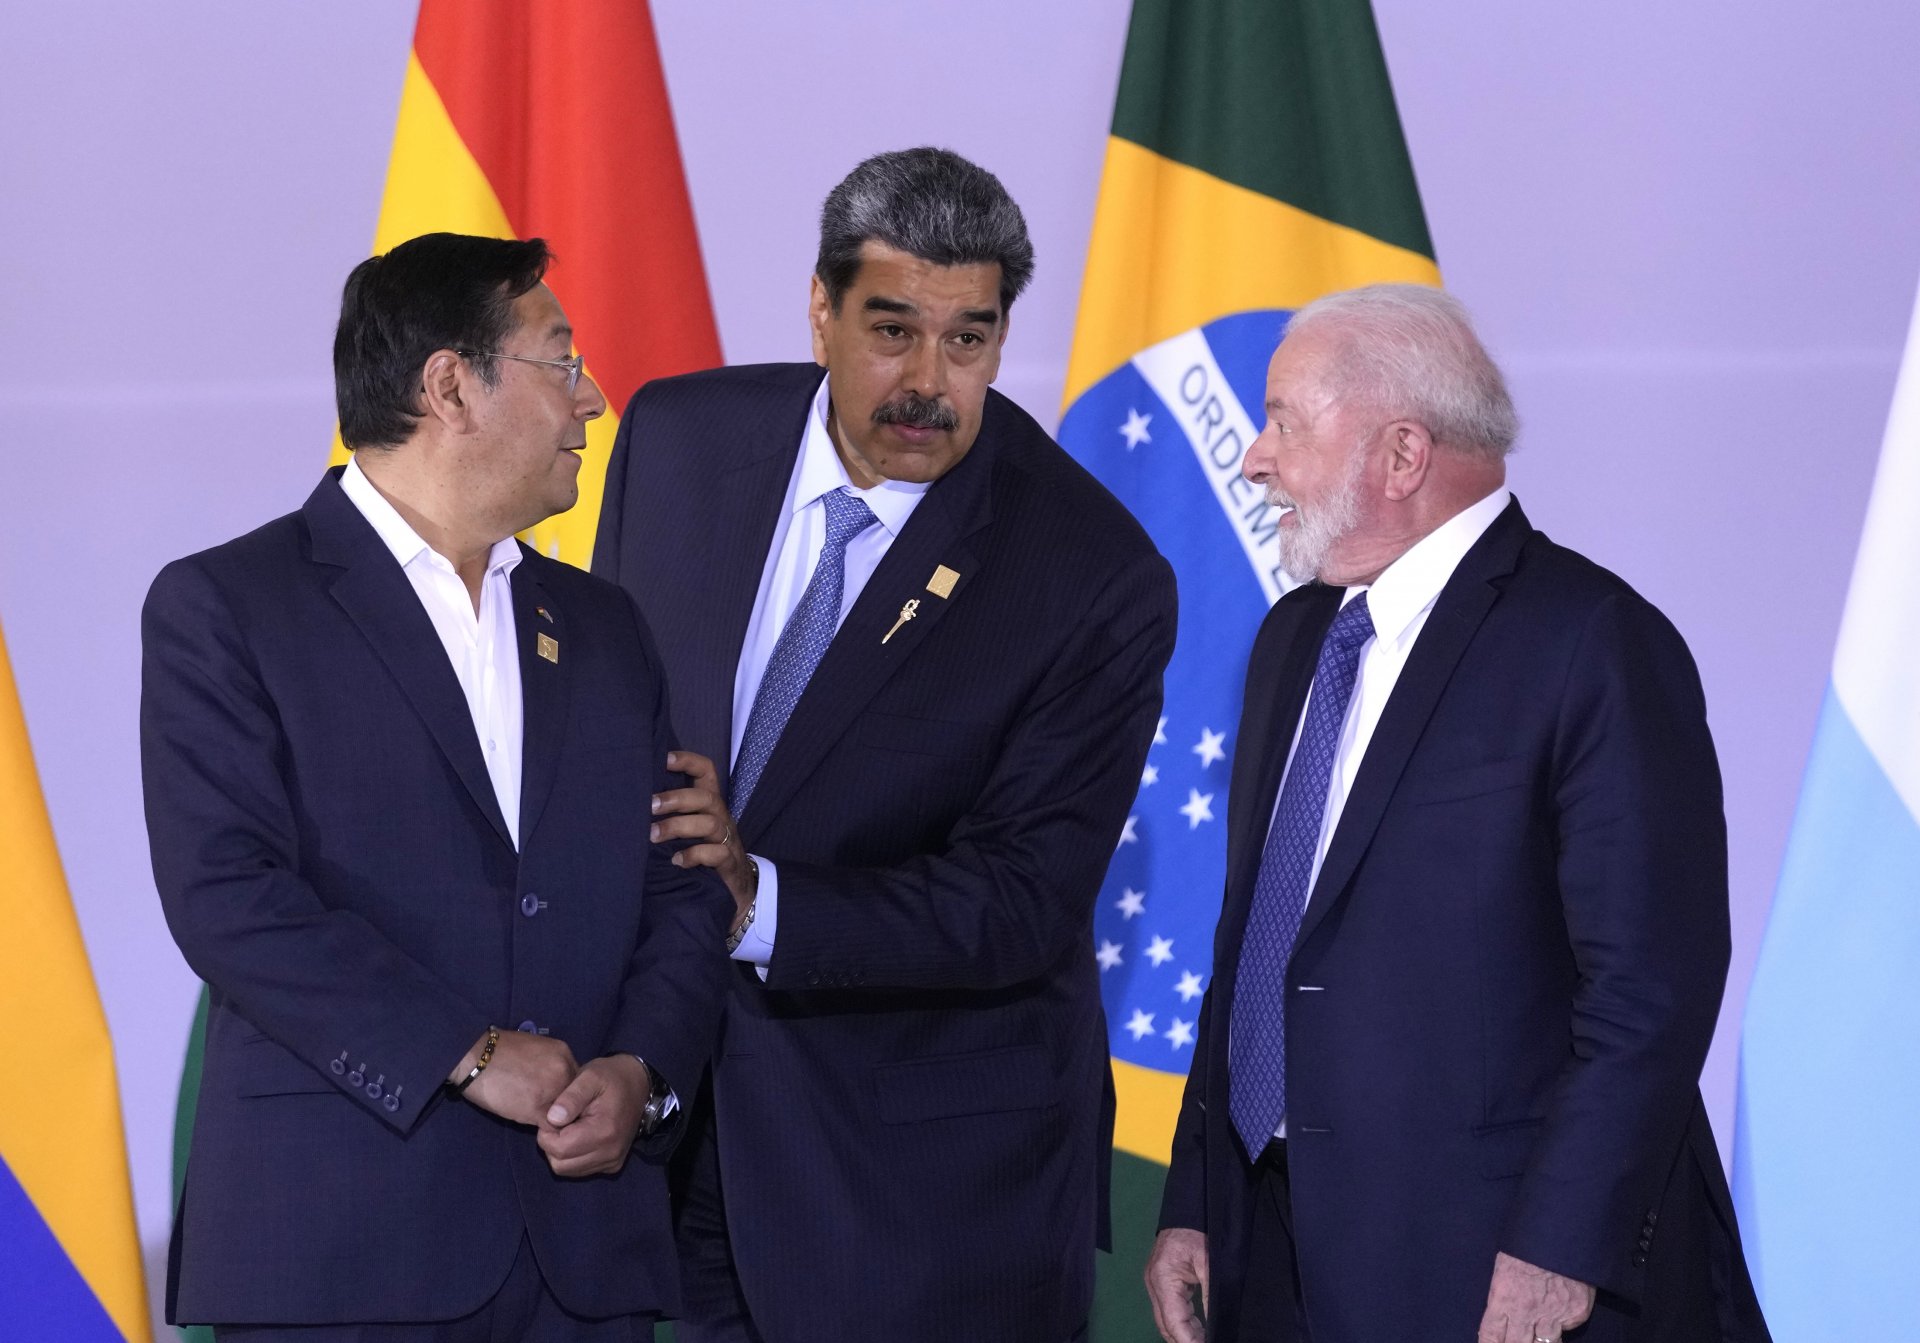 Президентите на Боливия, Венецуела Бразилия - Луис Арке, Николас Мадуро и Луиз Инасио Лула да Силва, по време на форума на Съюза на южноамериканските нации